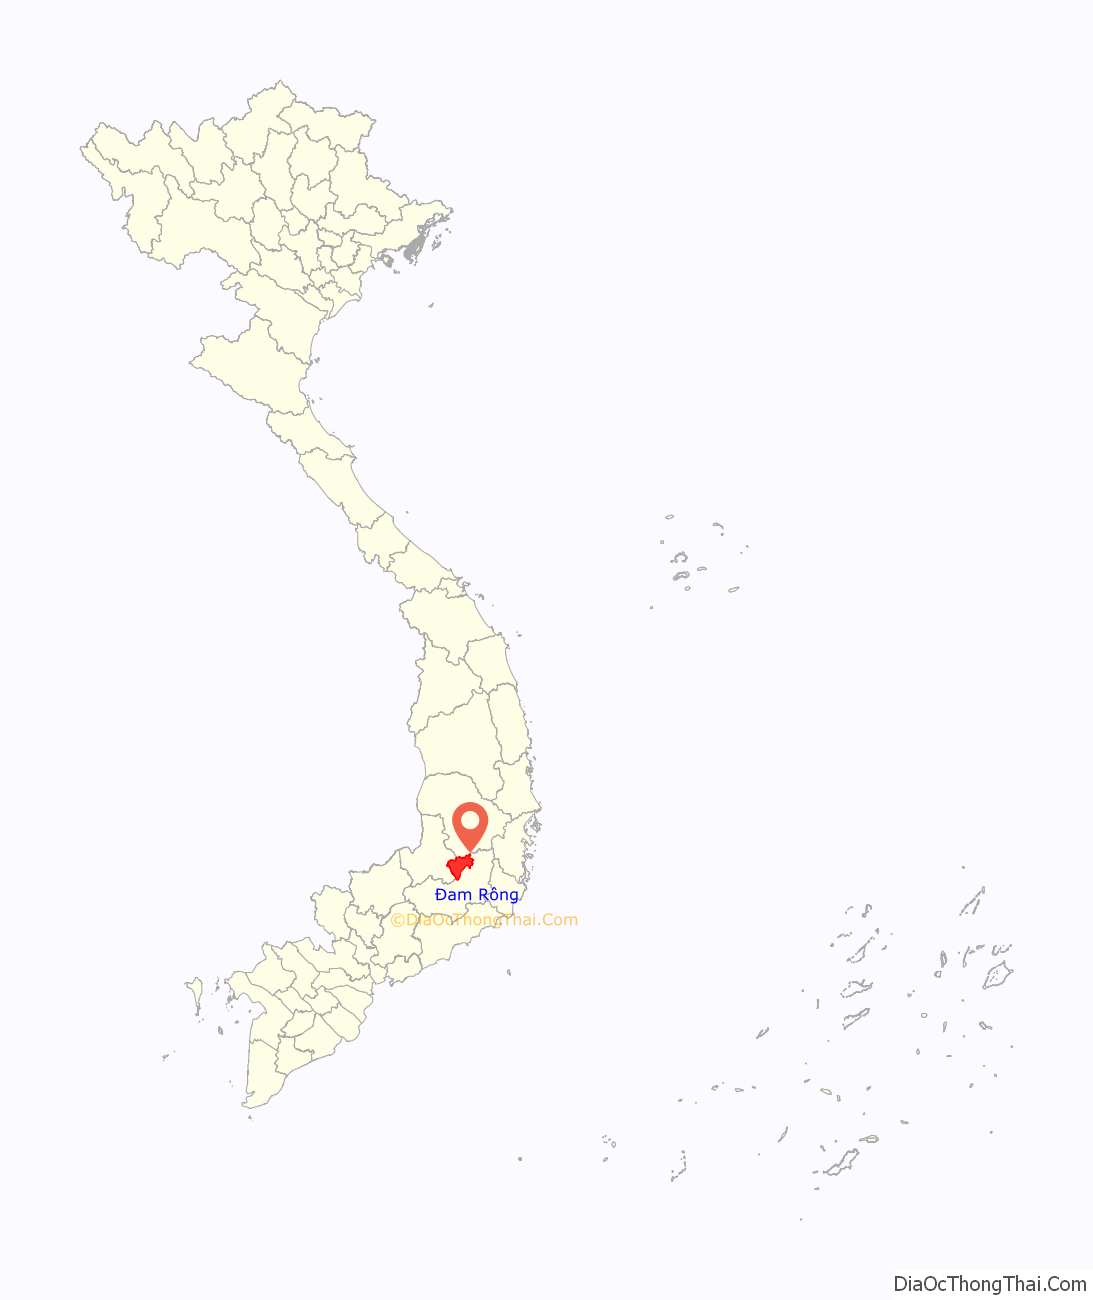 Huyện Đam Rông ở đâu? Vị trí của huyện Đam Rông